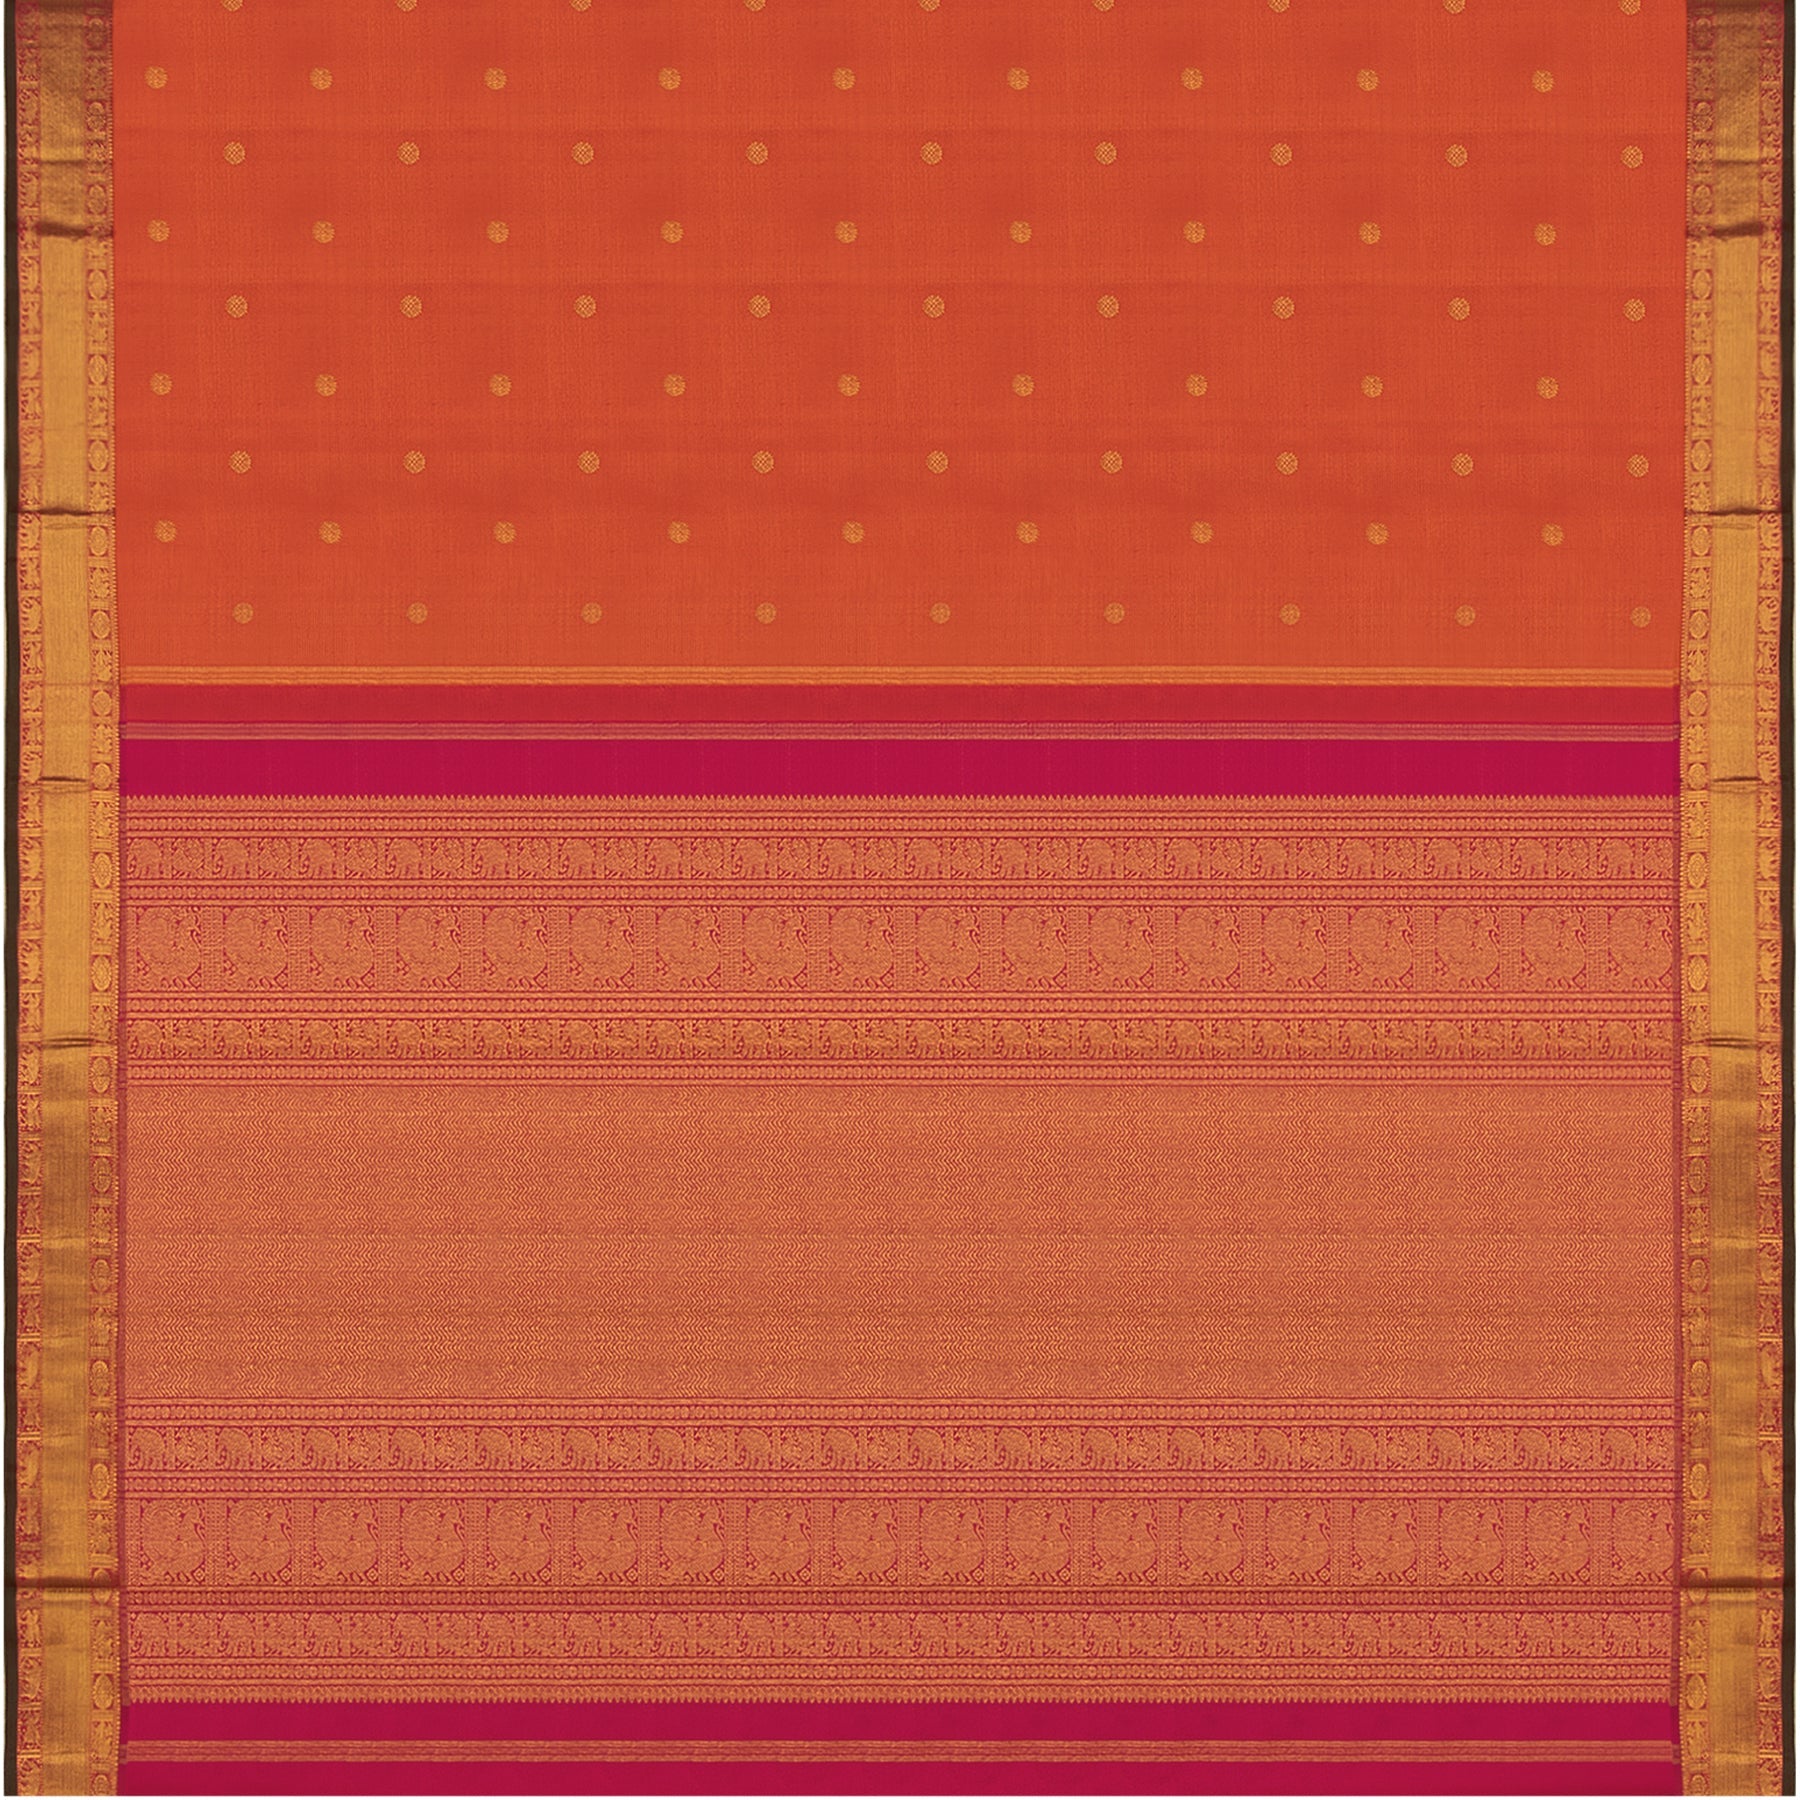 Kanakavalli Kanjivaram Silk Sari 23-110-HS001-01031 - Full View